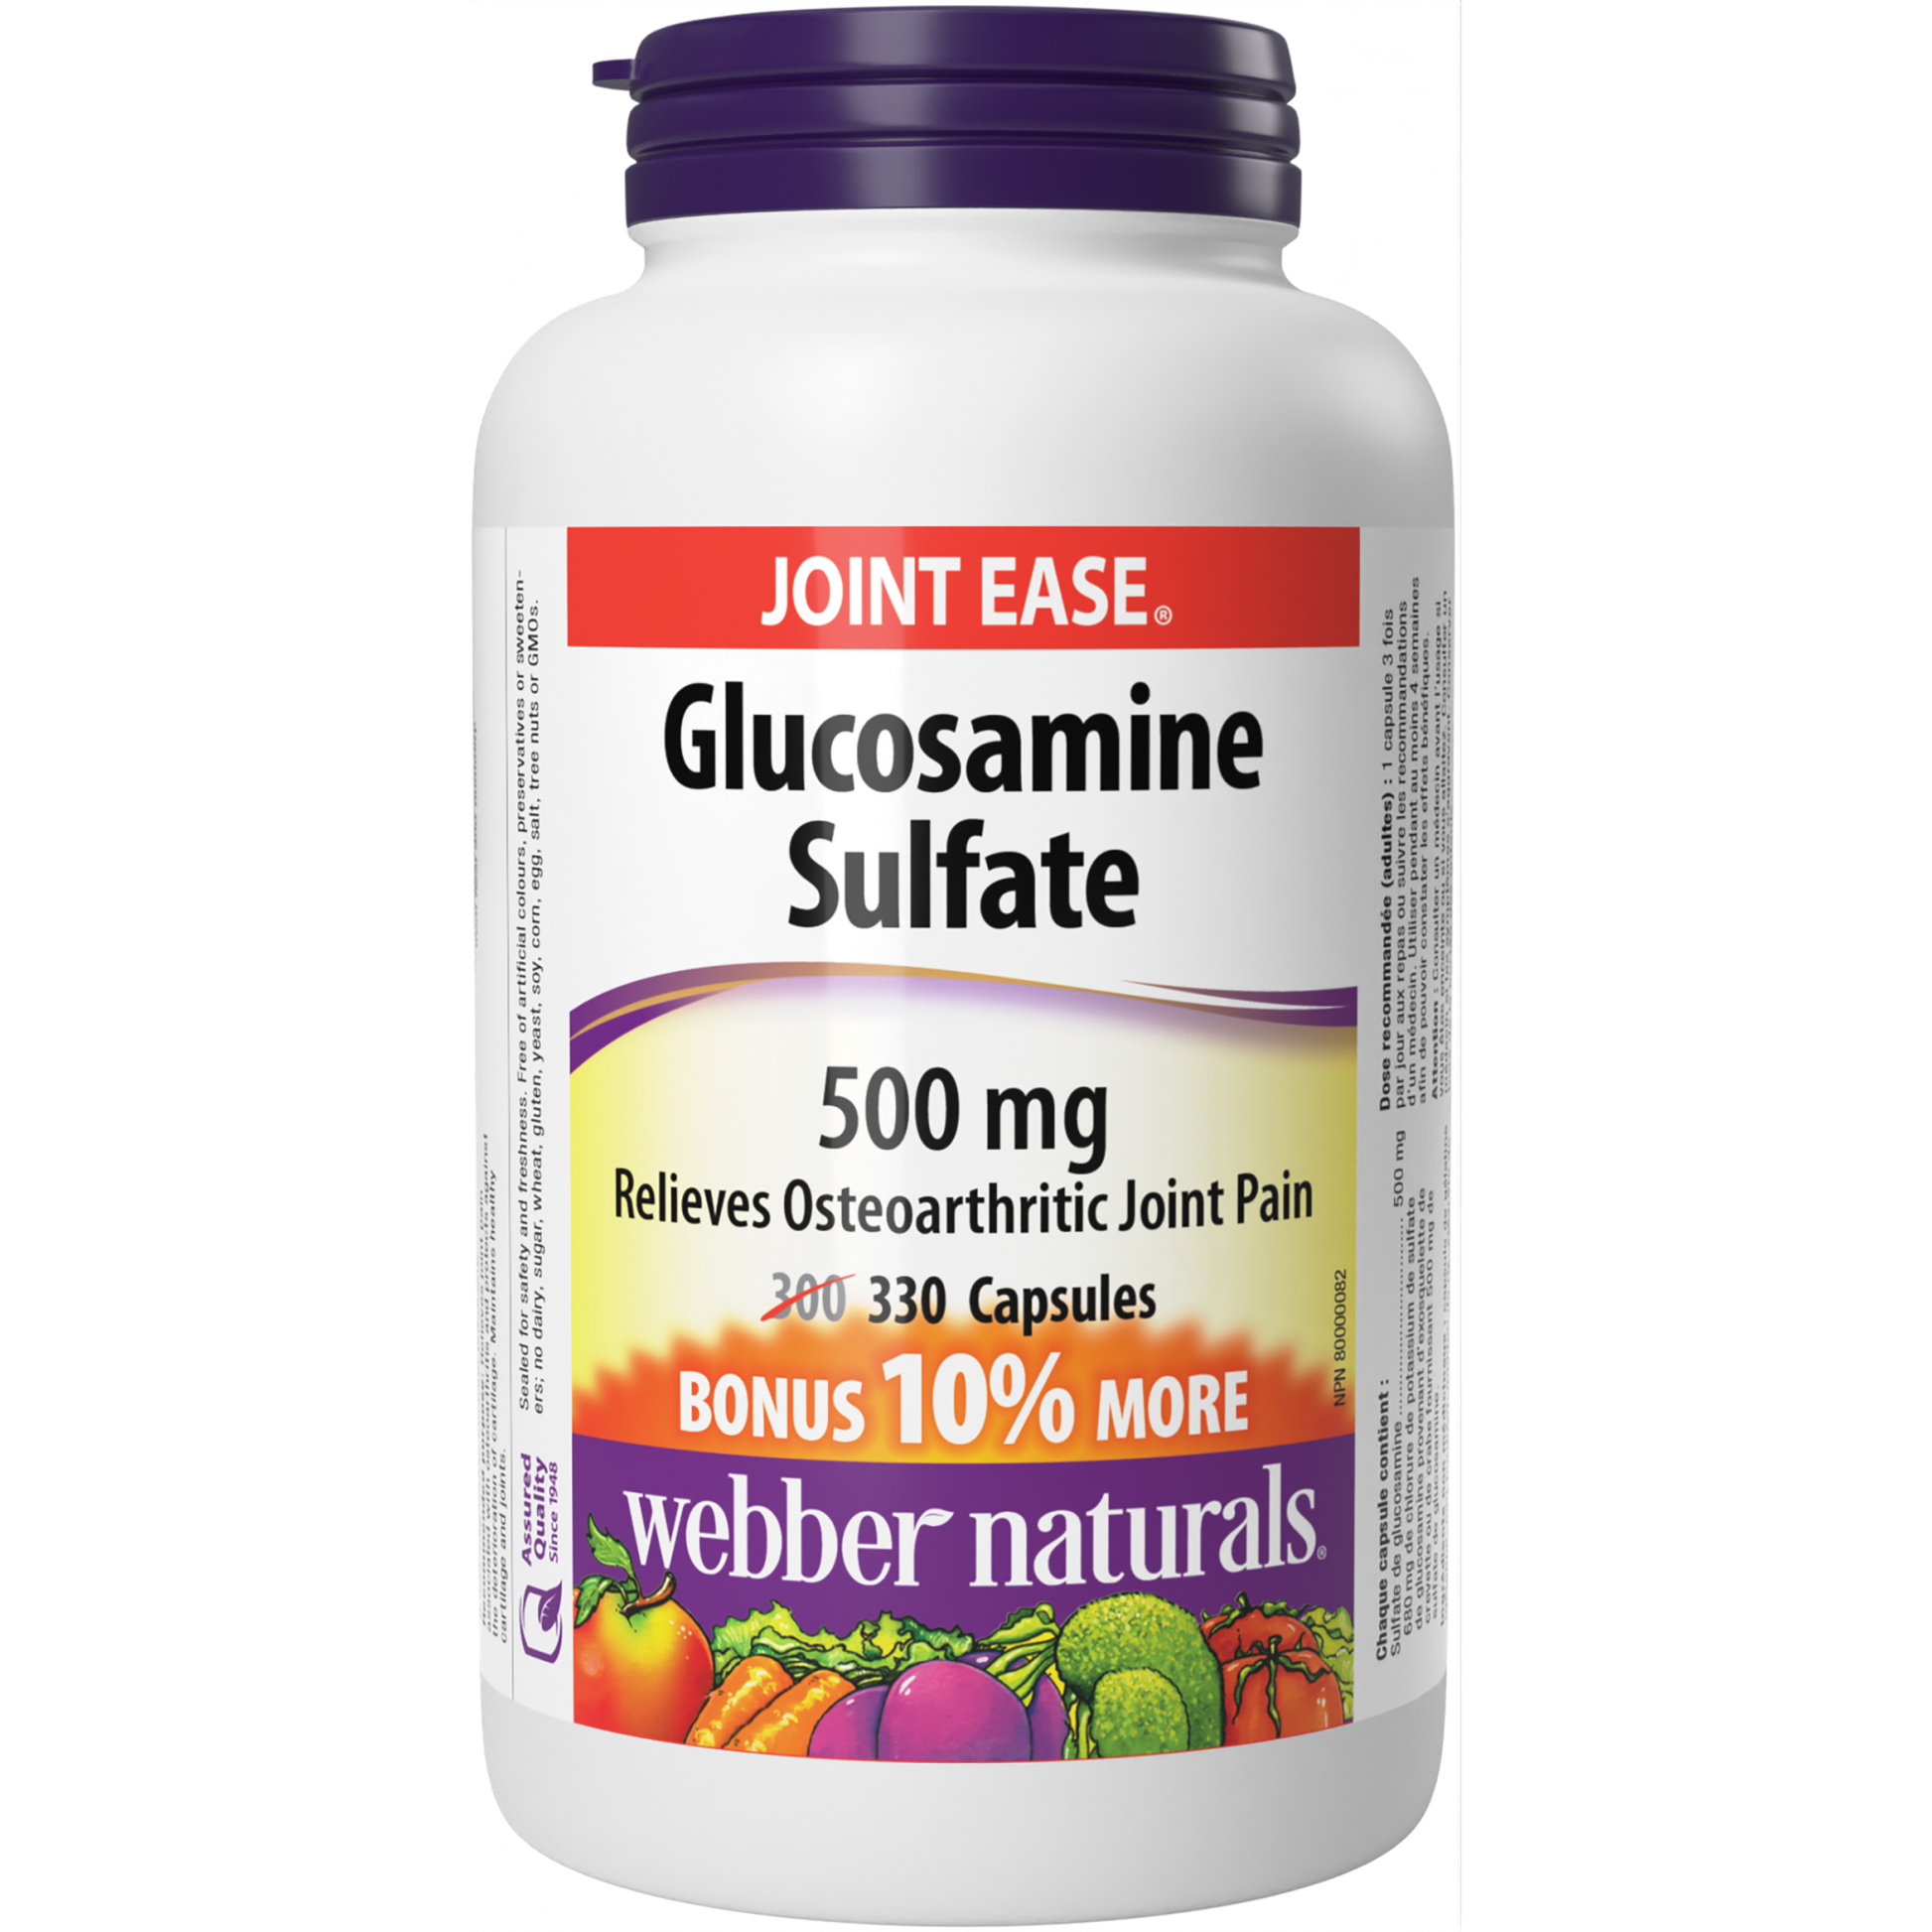 Glucosamine Sulfate 500 mg for Webber Naturals|v|hi-res|WN3838